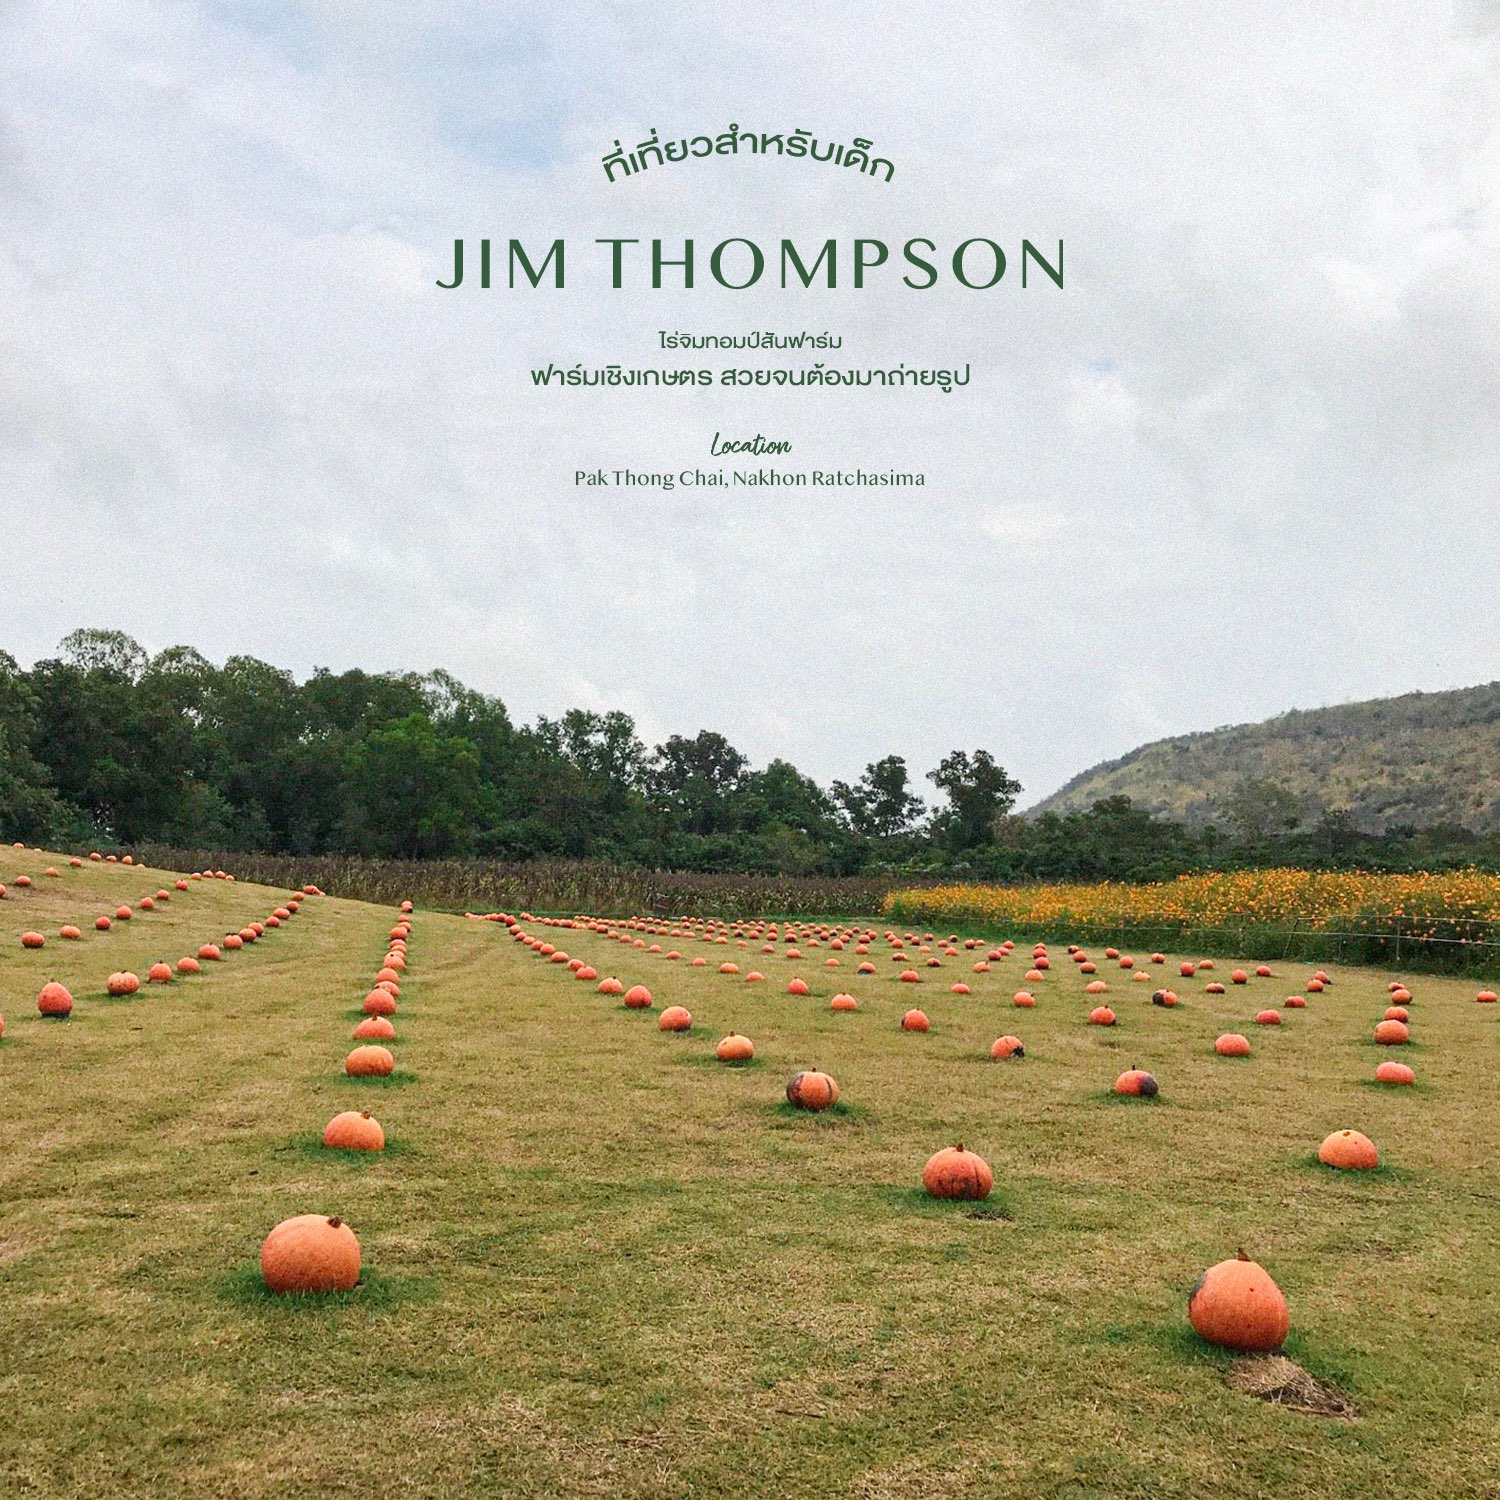 吉姆·汤普森农场 - 吉姆·汤普森农场